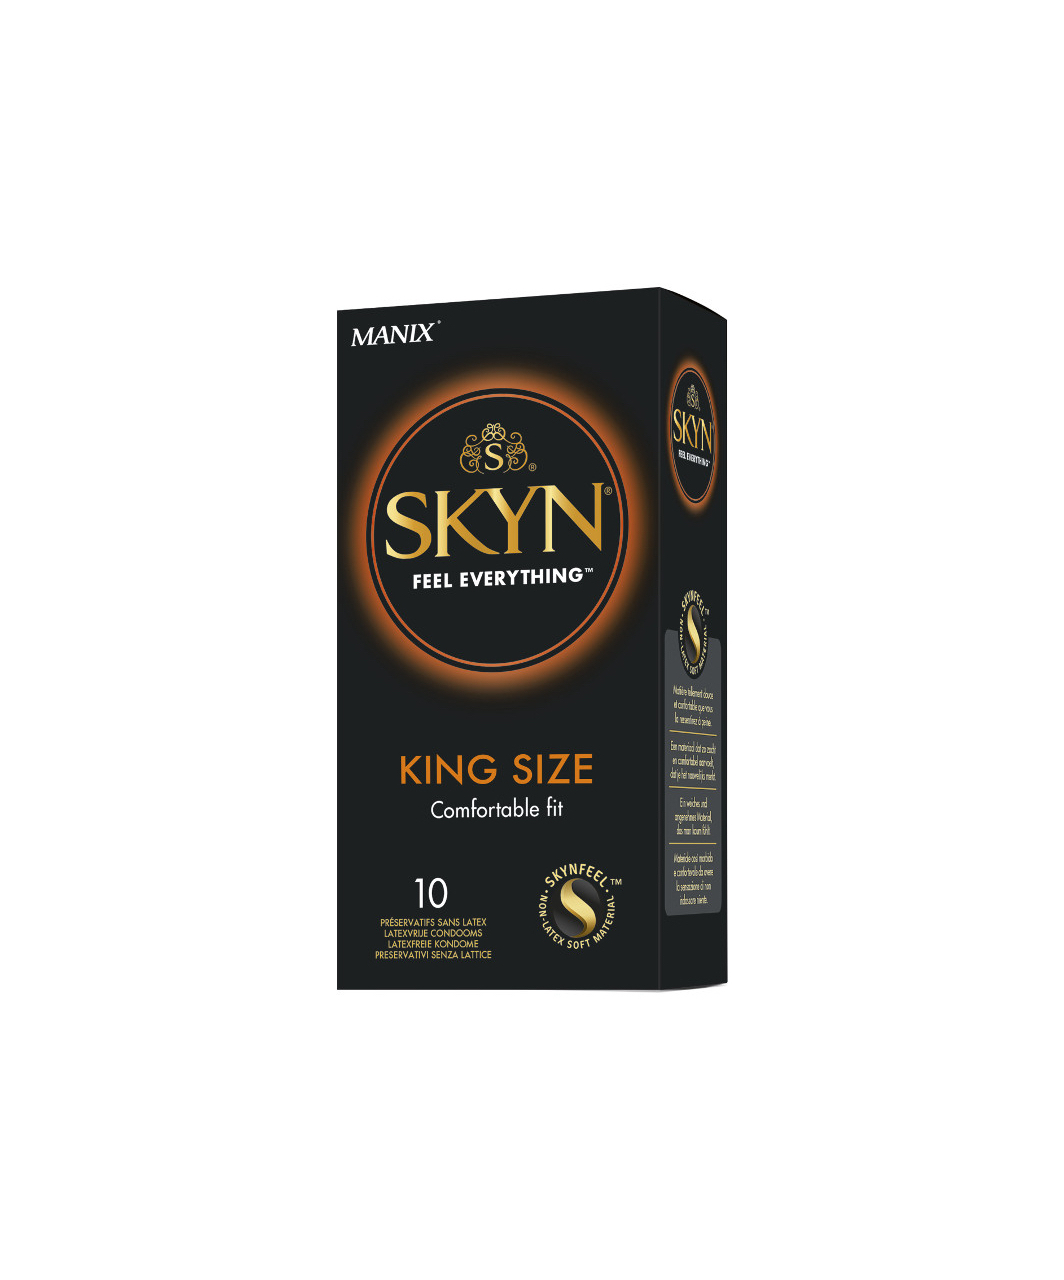 SKYN King Size kondoomid (3 / 10 tk)